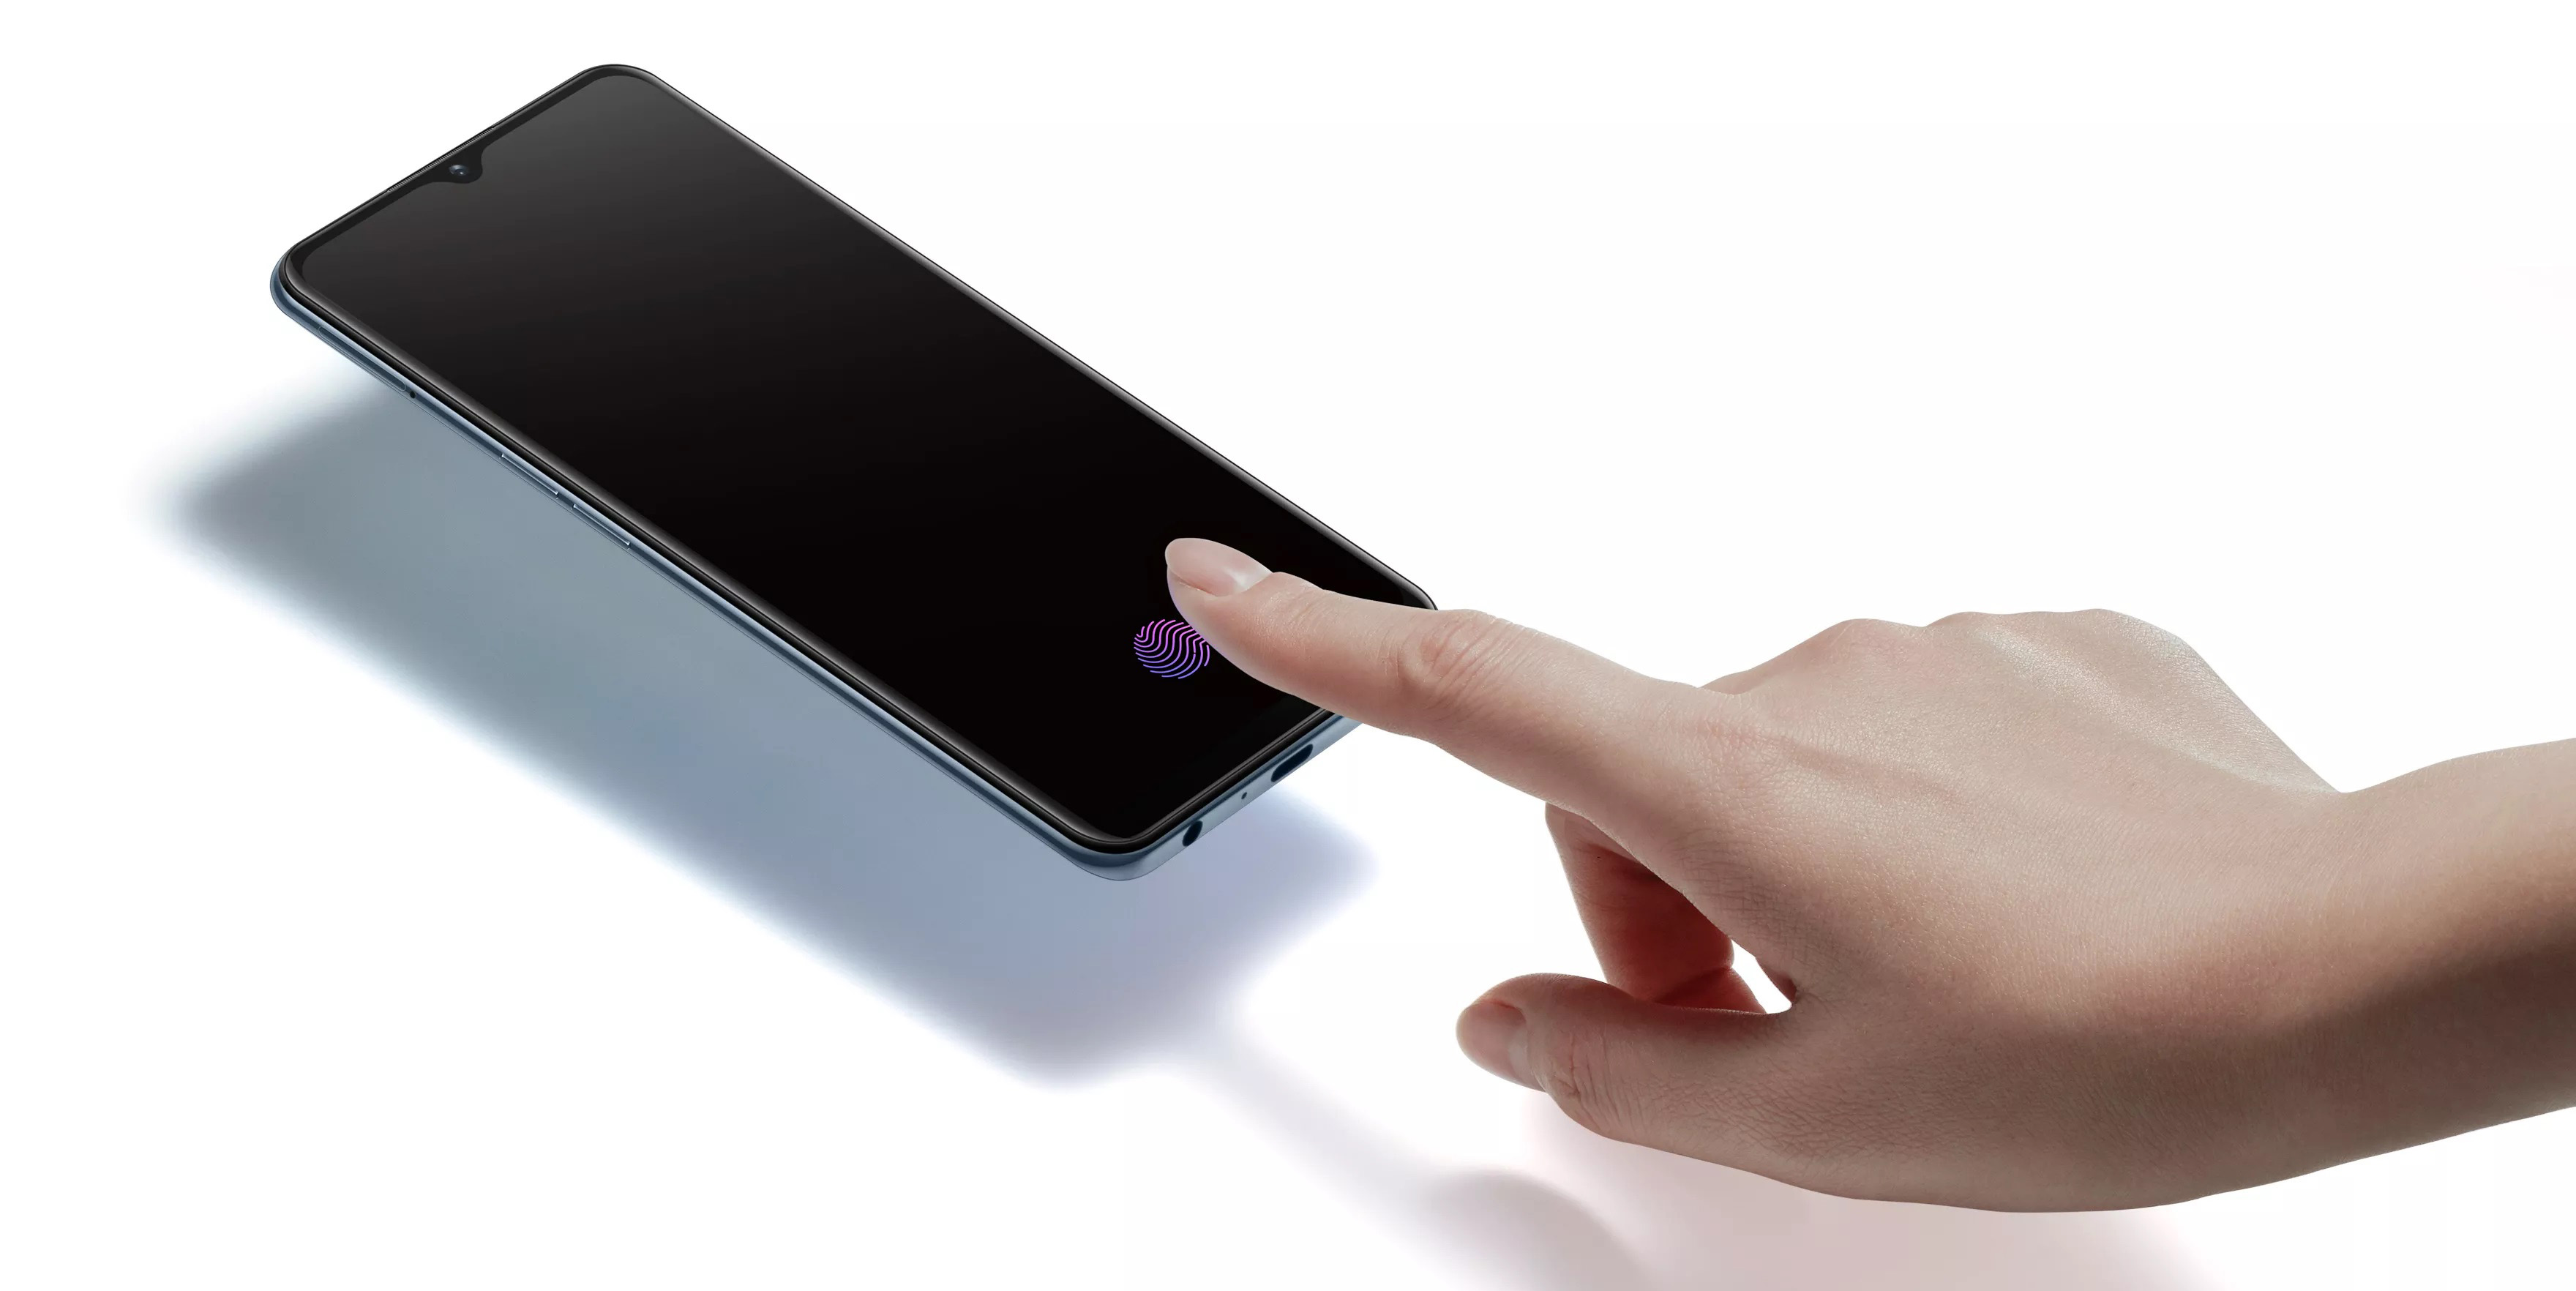 OPPO A8 và OPPO A91
chính thức ra mắt với thiết kế màn hình ''giọt
nước'', giá 3.9 và 6.6 triệu